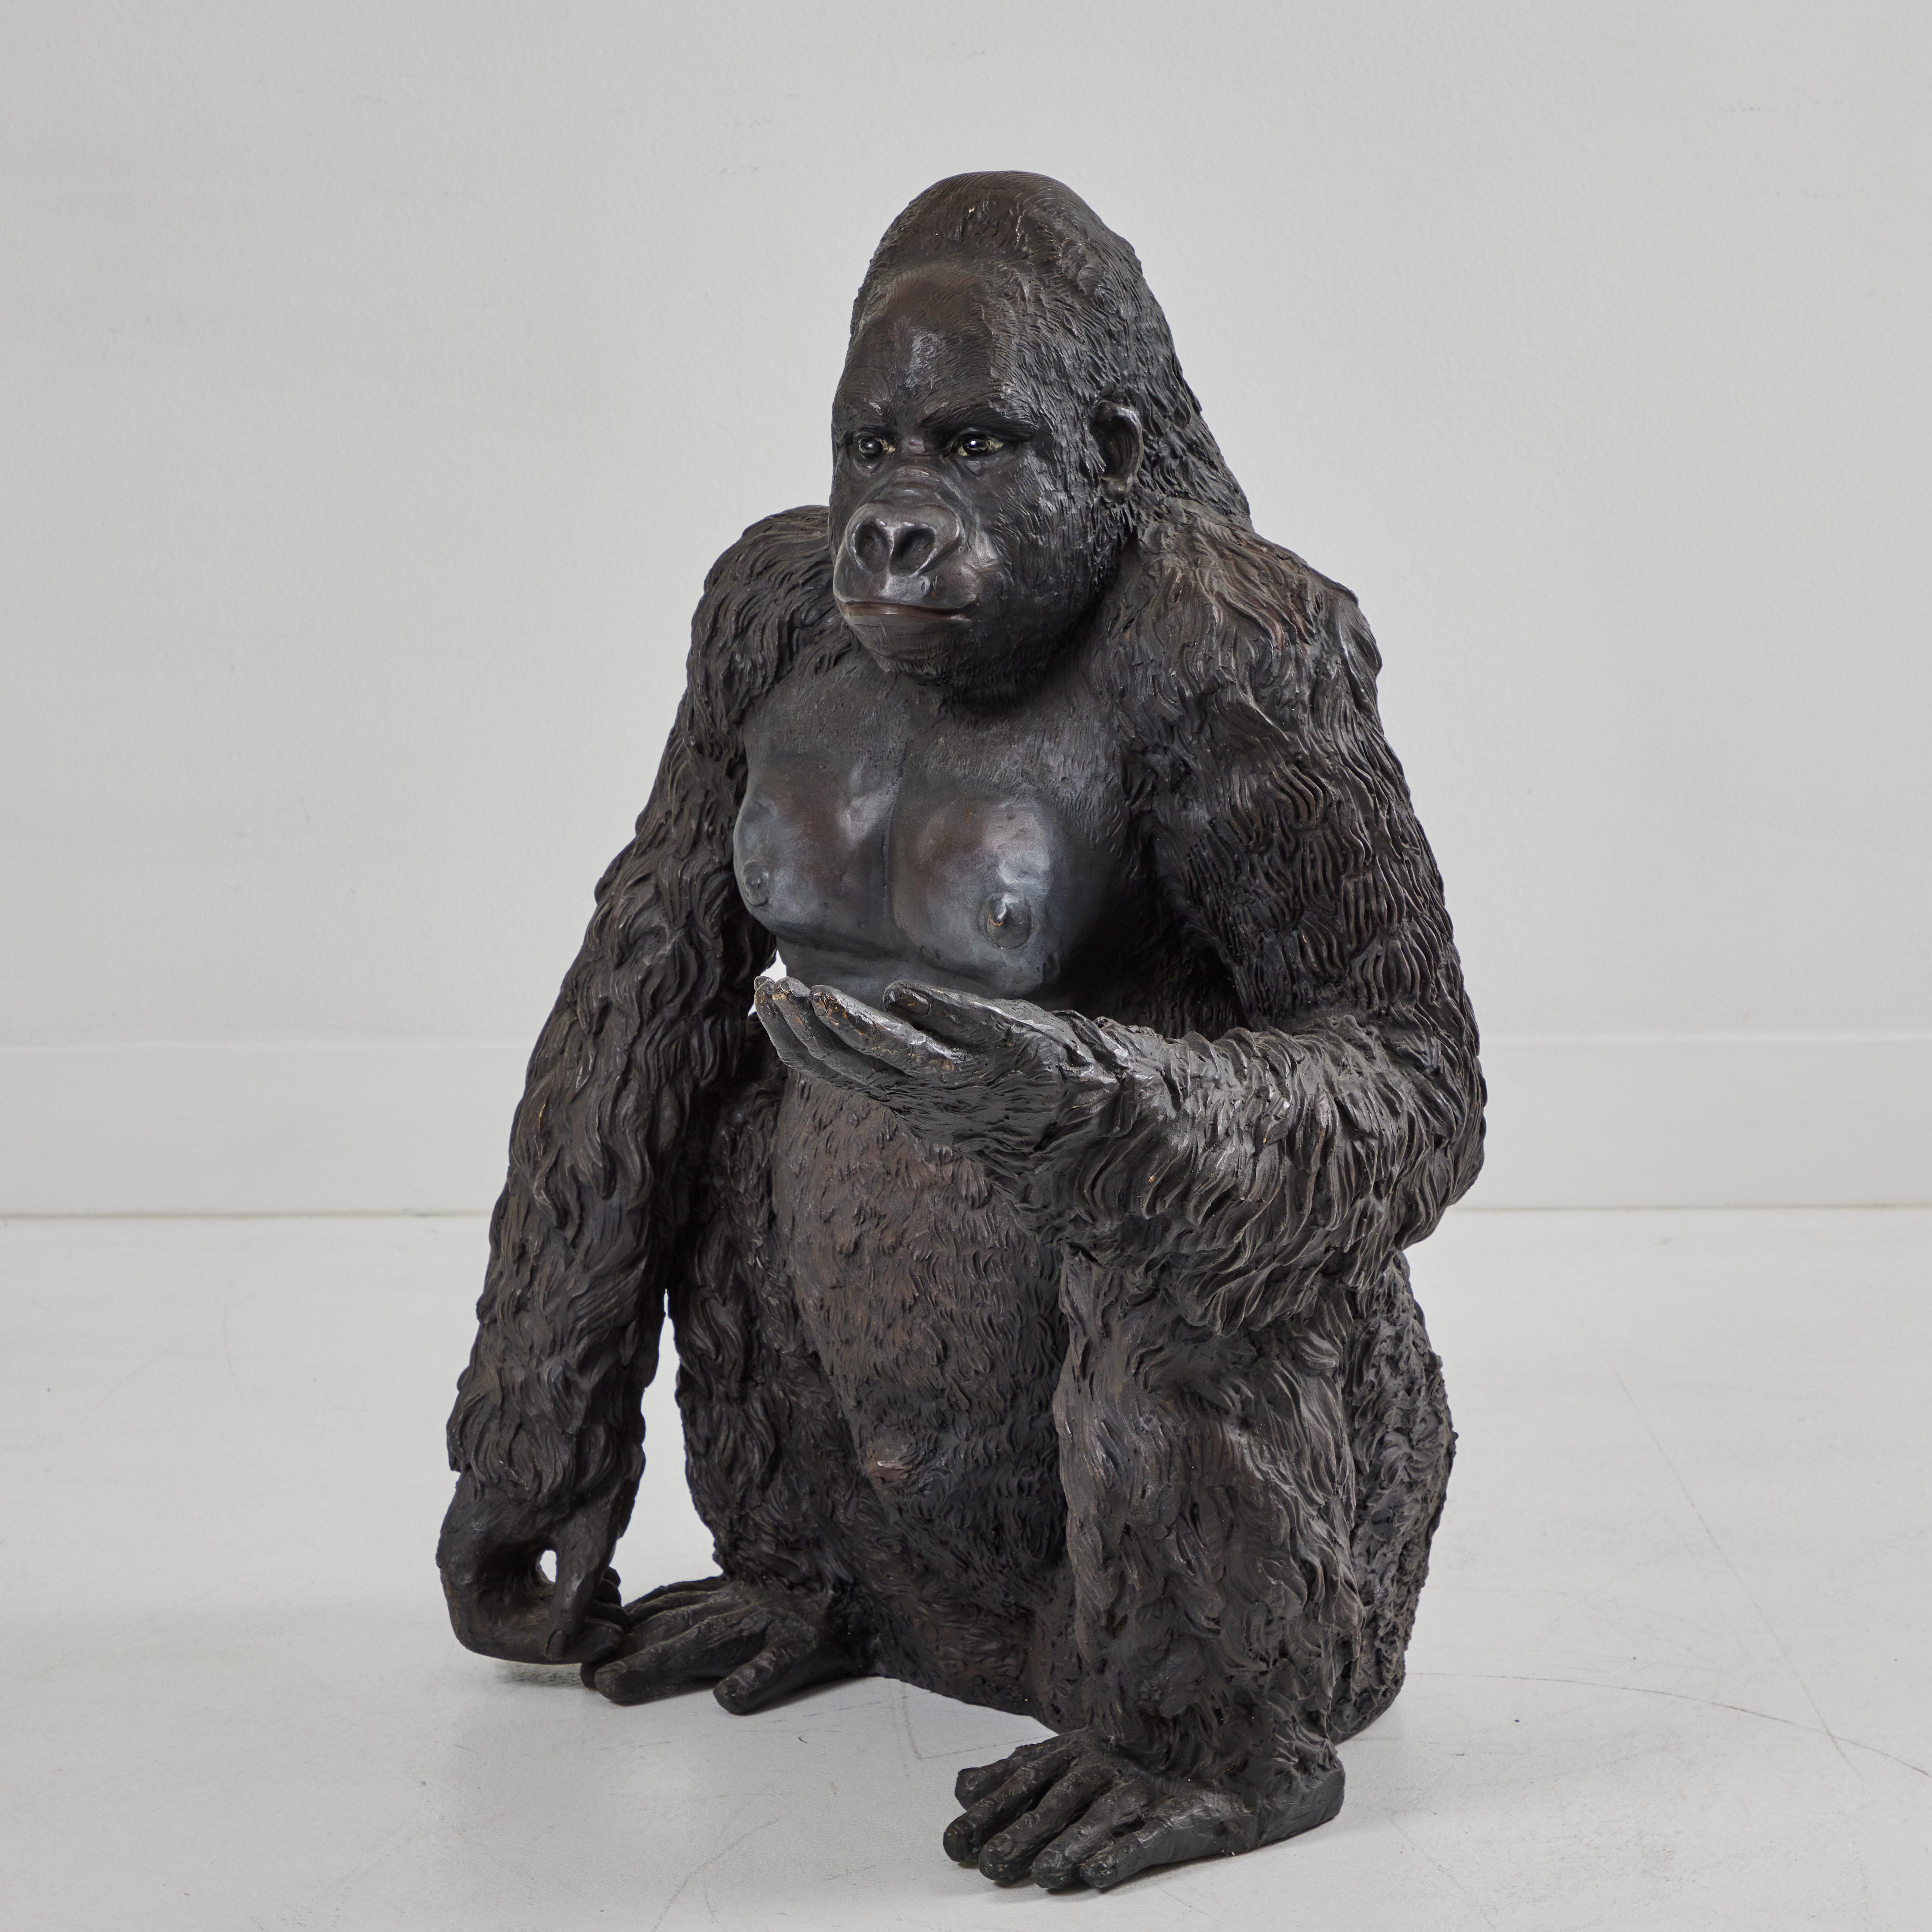 Dieser bronzene Gorilla sitzt aufmerksam mit ausgestreckter linker Hand und entspanntem rechten Arm auf dem Boden. Die schwarzen Glasaugen reflektieren das Umgebungslicht und verleihen diesem Kerl ein mitfühlendes und lebensechtes Gesicht. Die